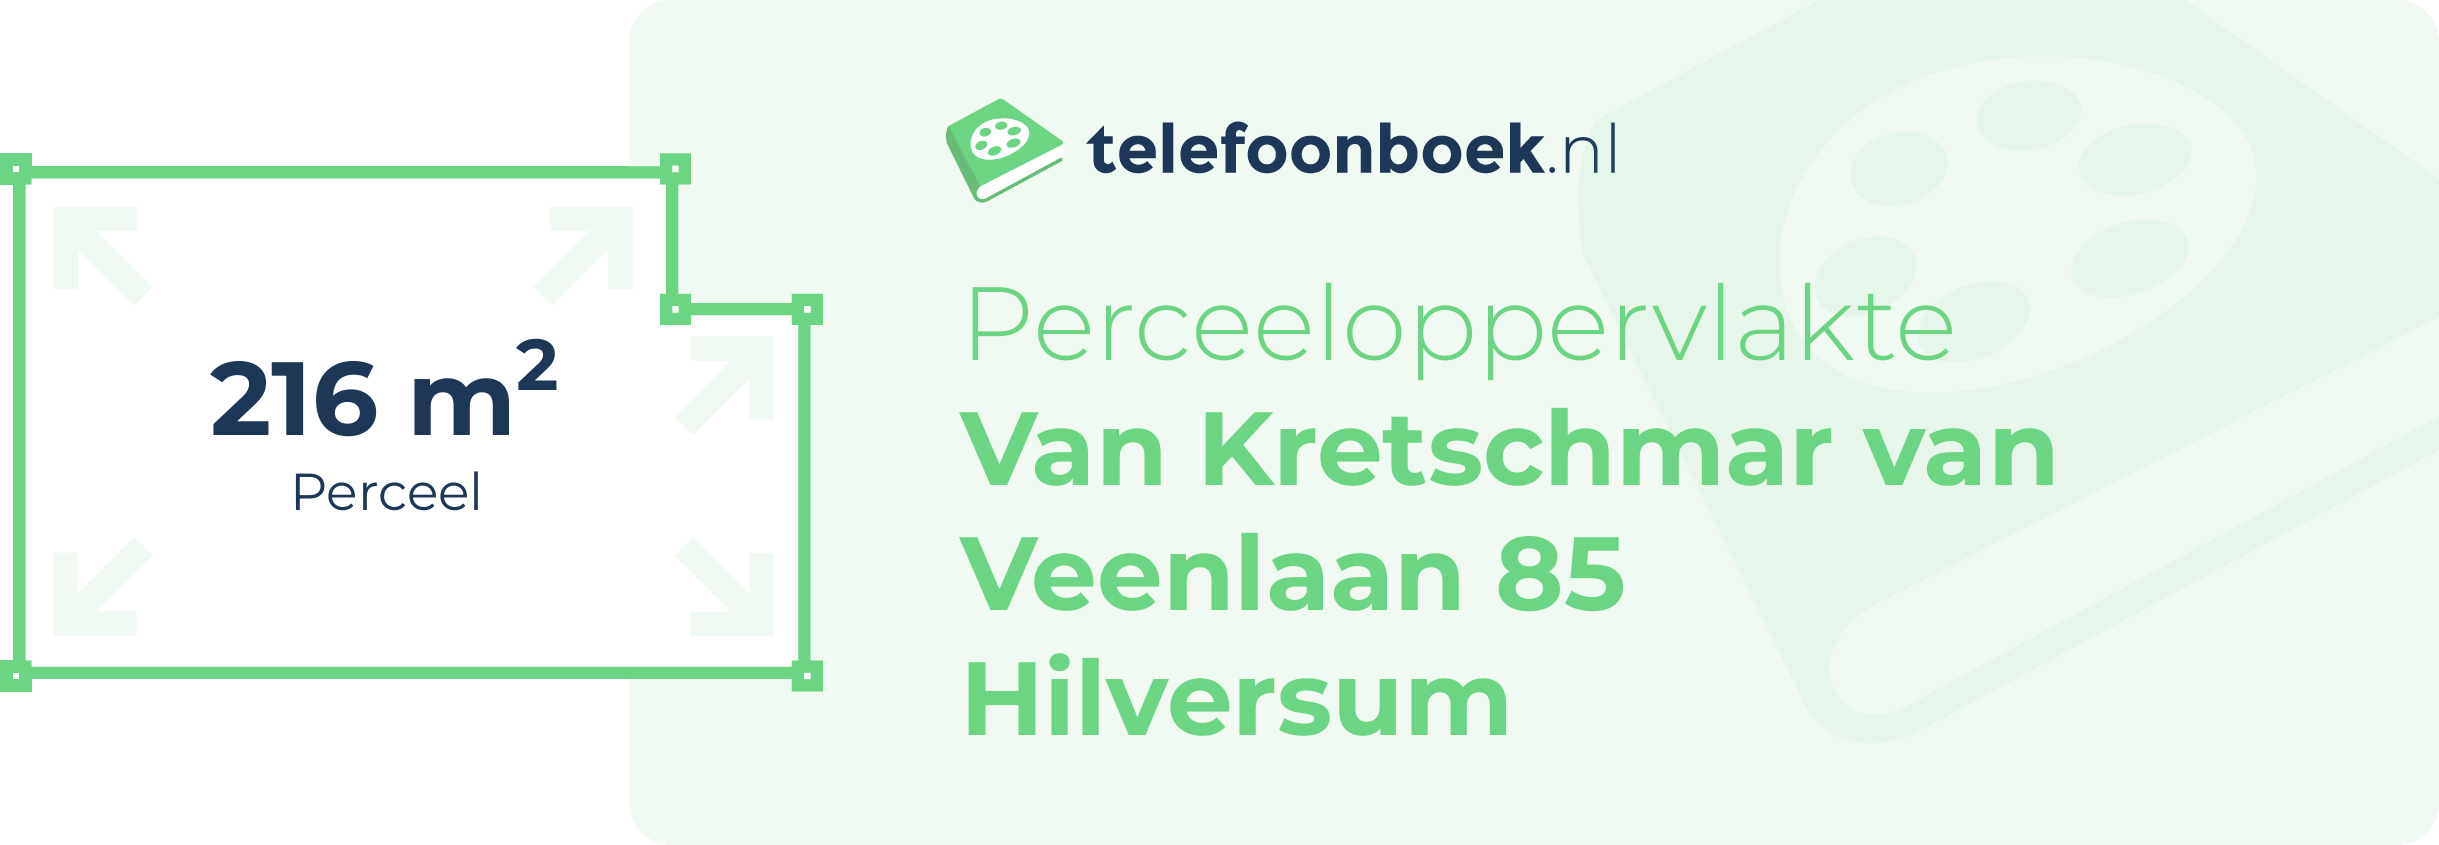 Perceeloppervlakte Van Kretschmar Van Veenlaan 85 Hilversum